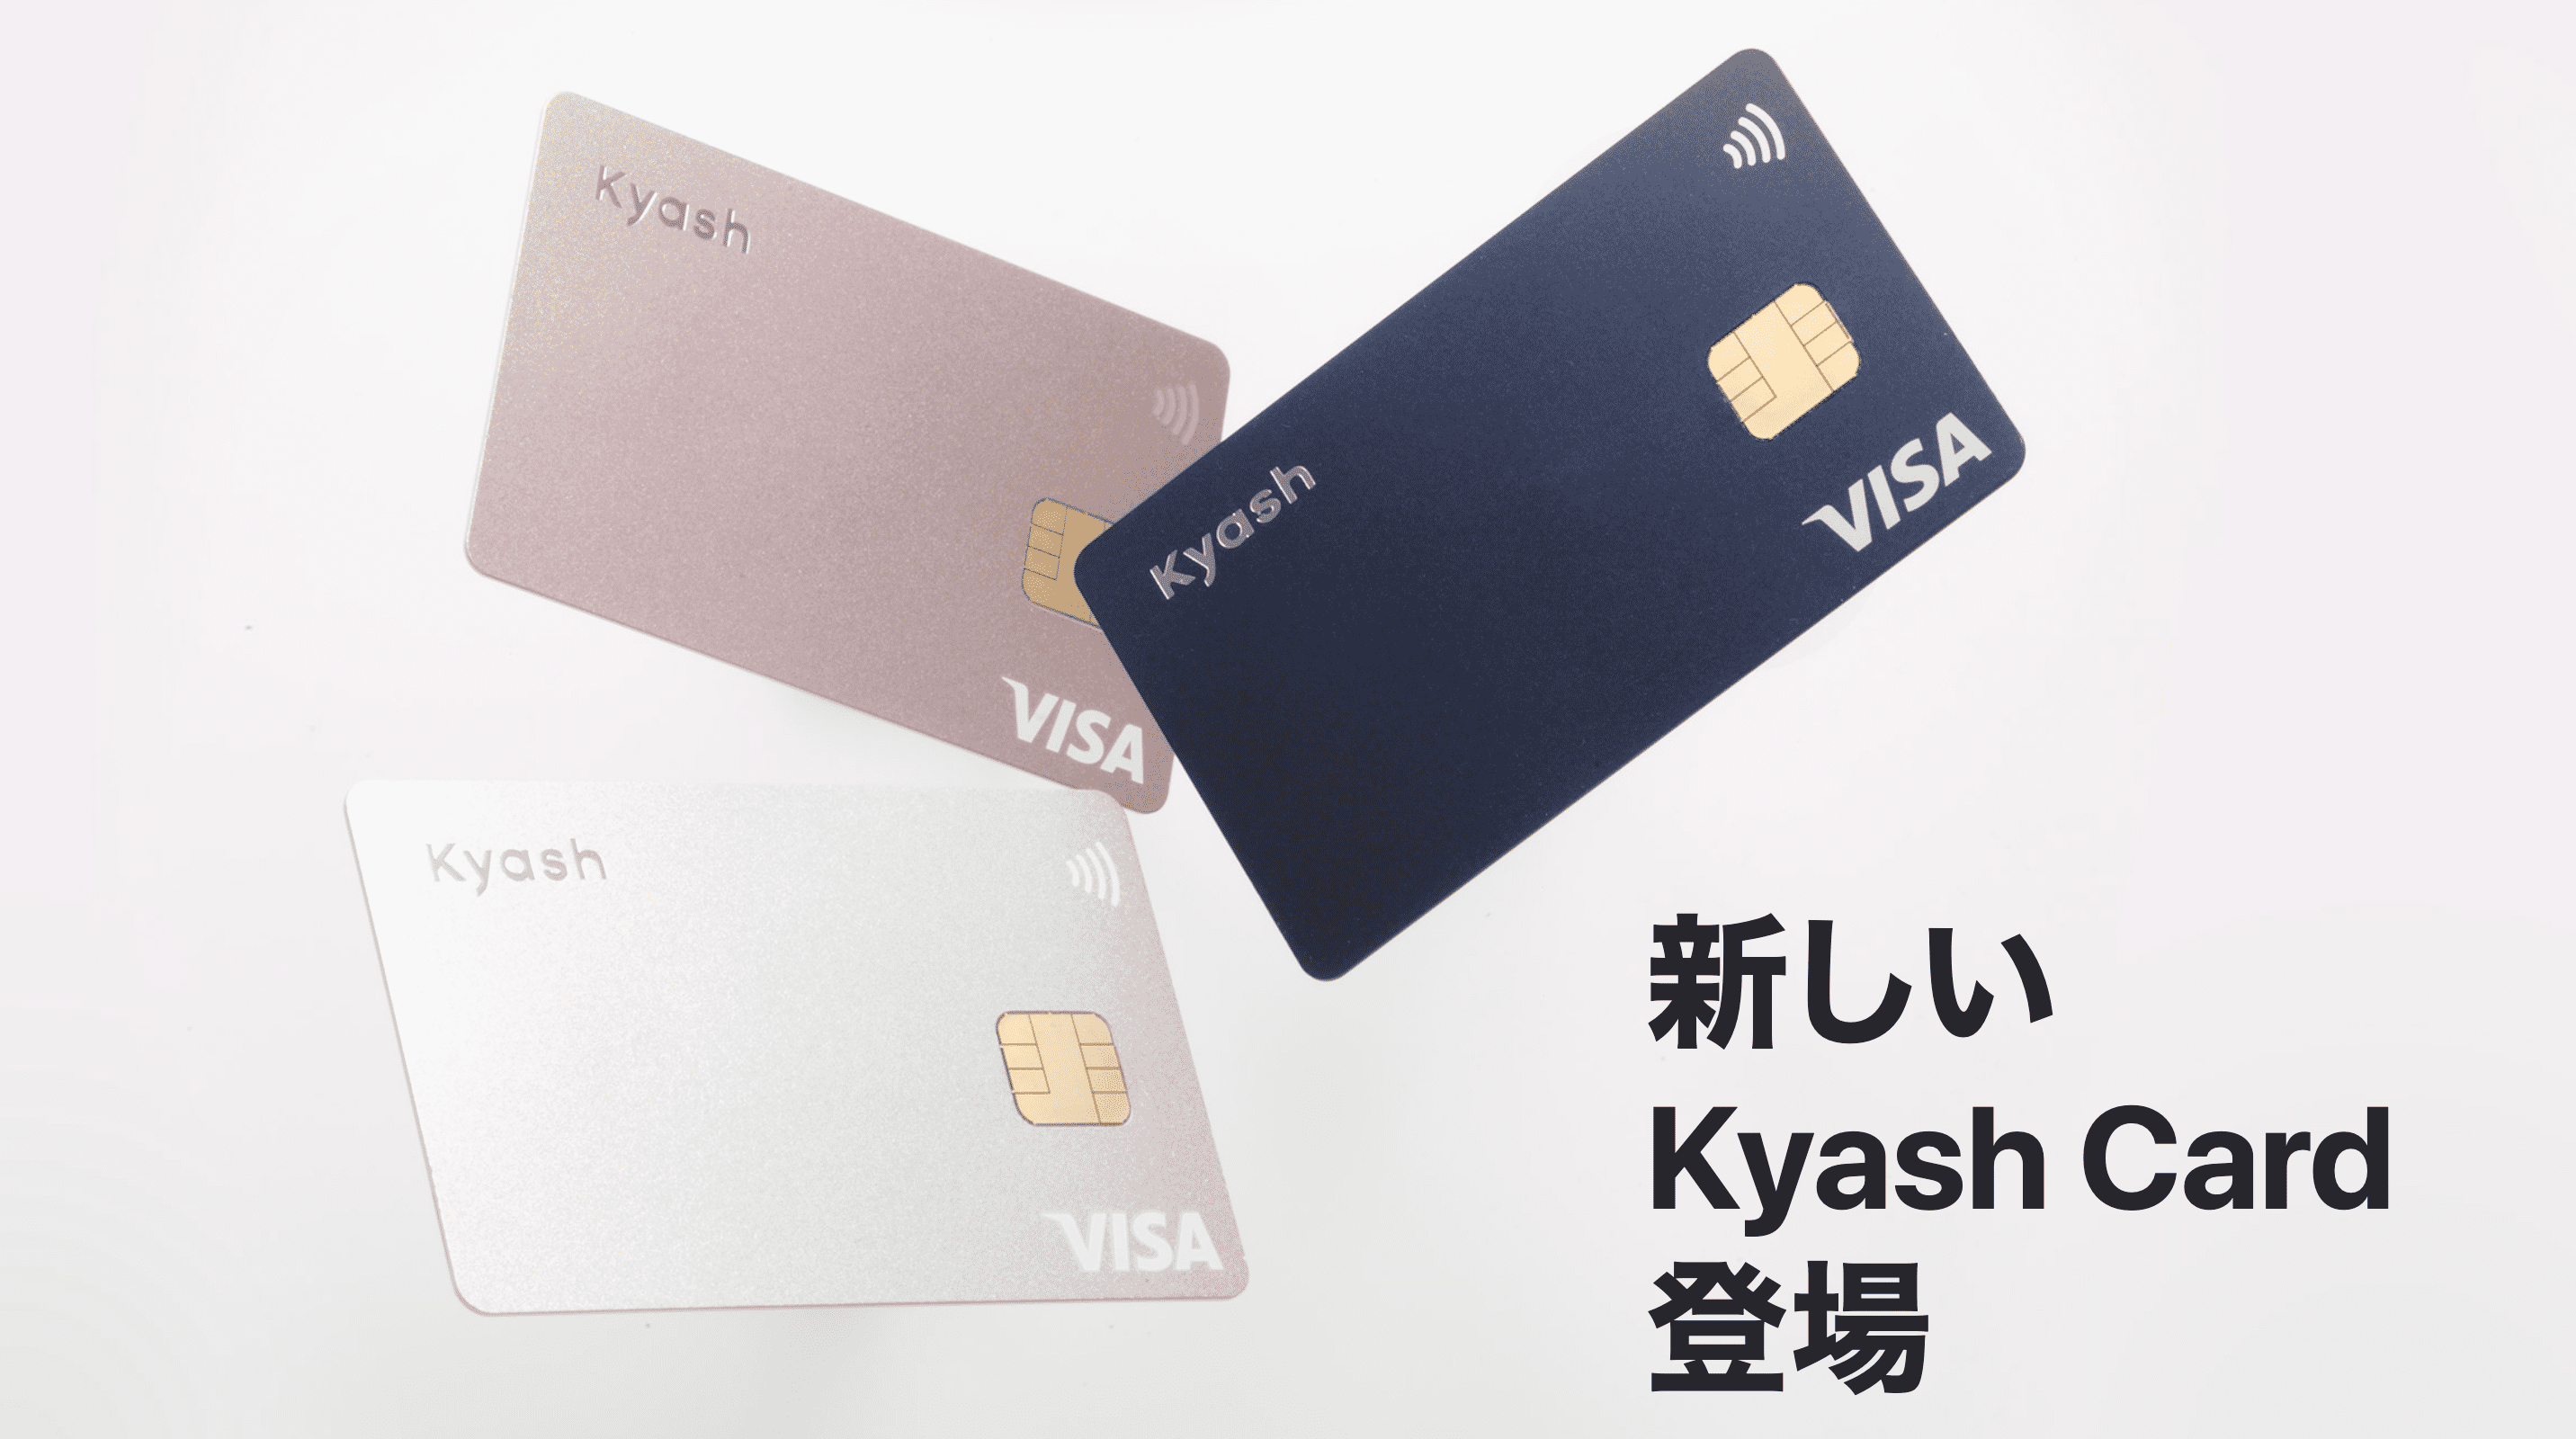 新しい Kyash Card 登場